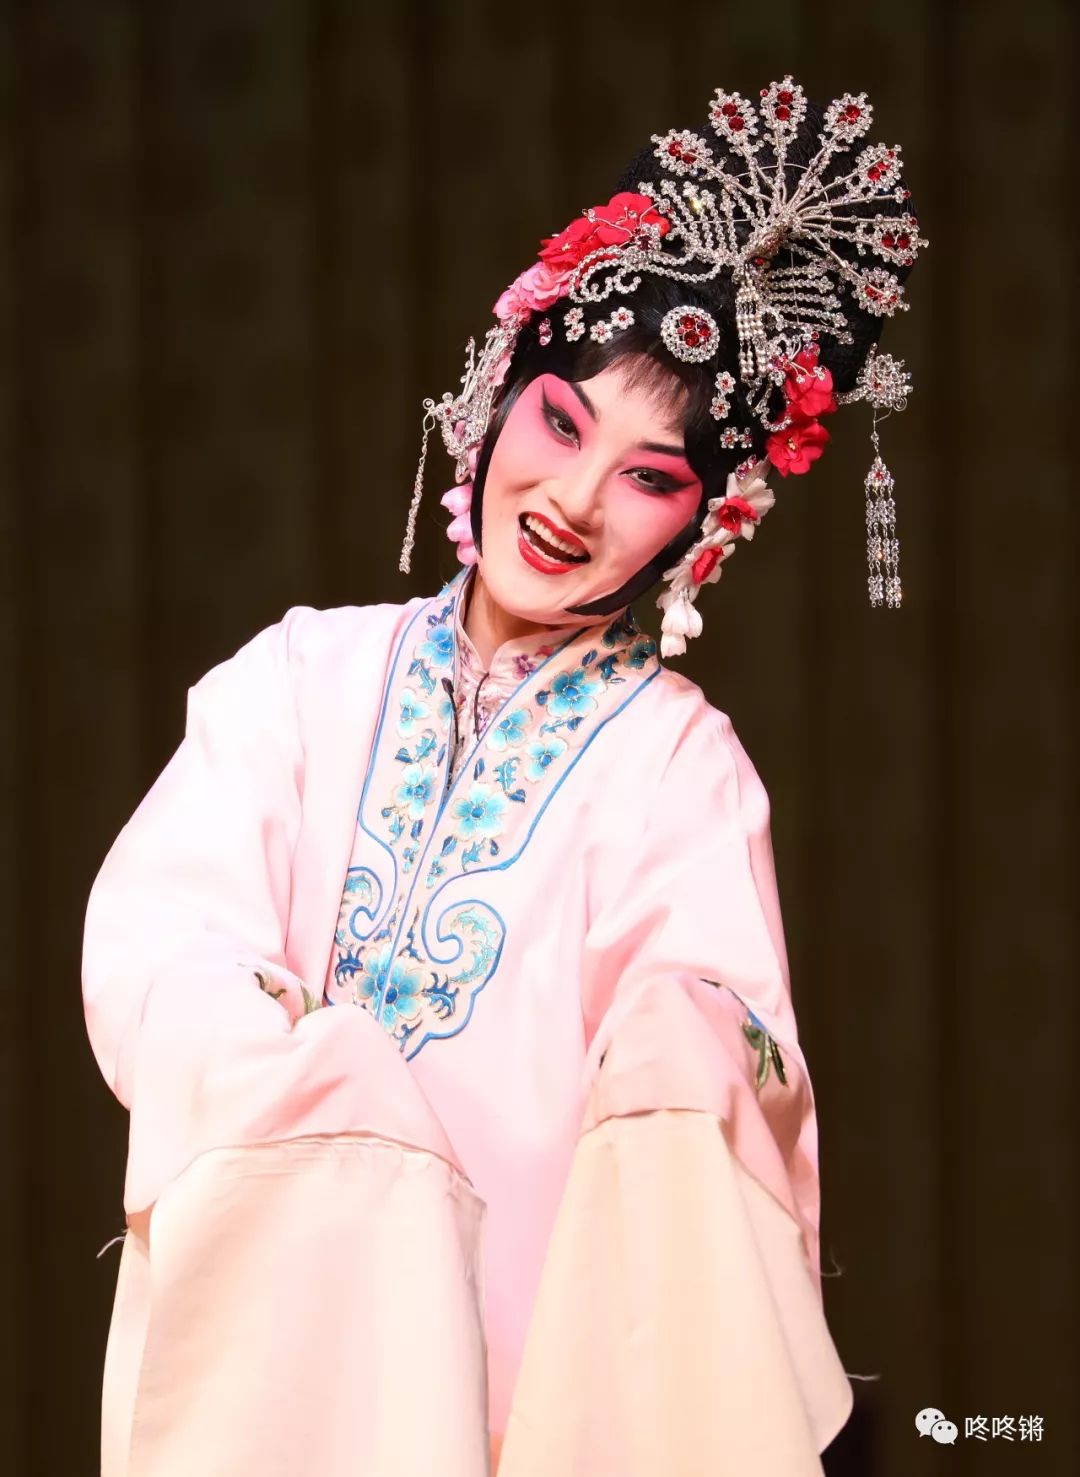 孙毓敏舞台生活70年荀风毓骨京剧剧目展演将于2020年1月9日在北京长安